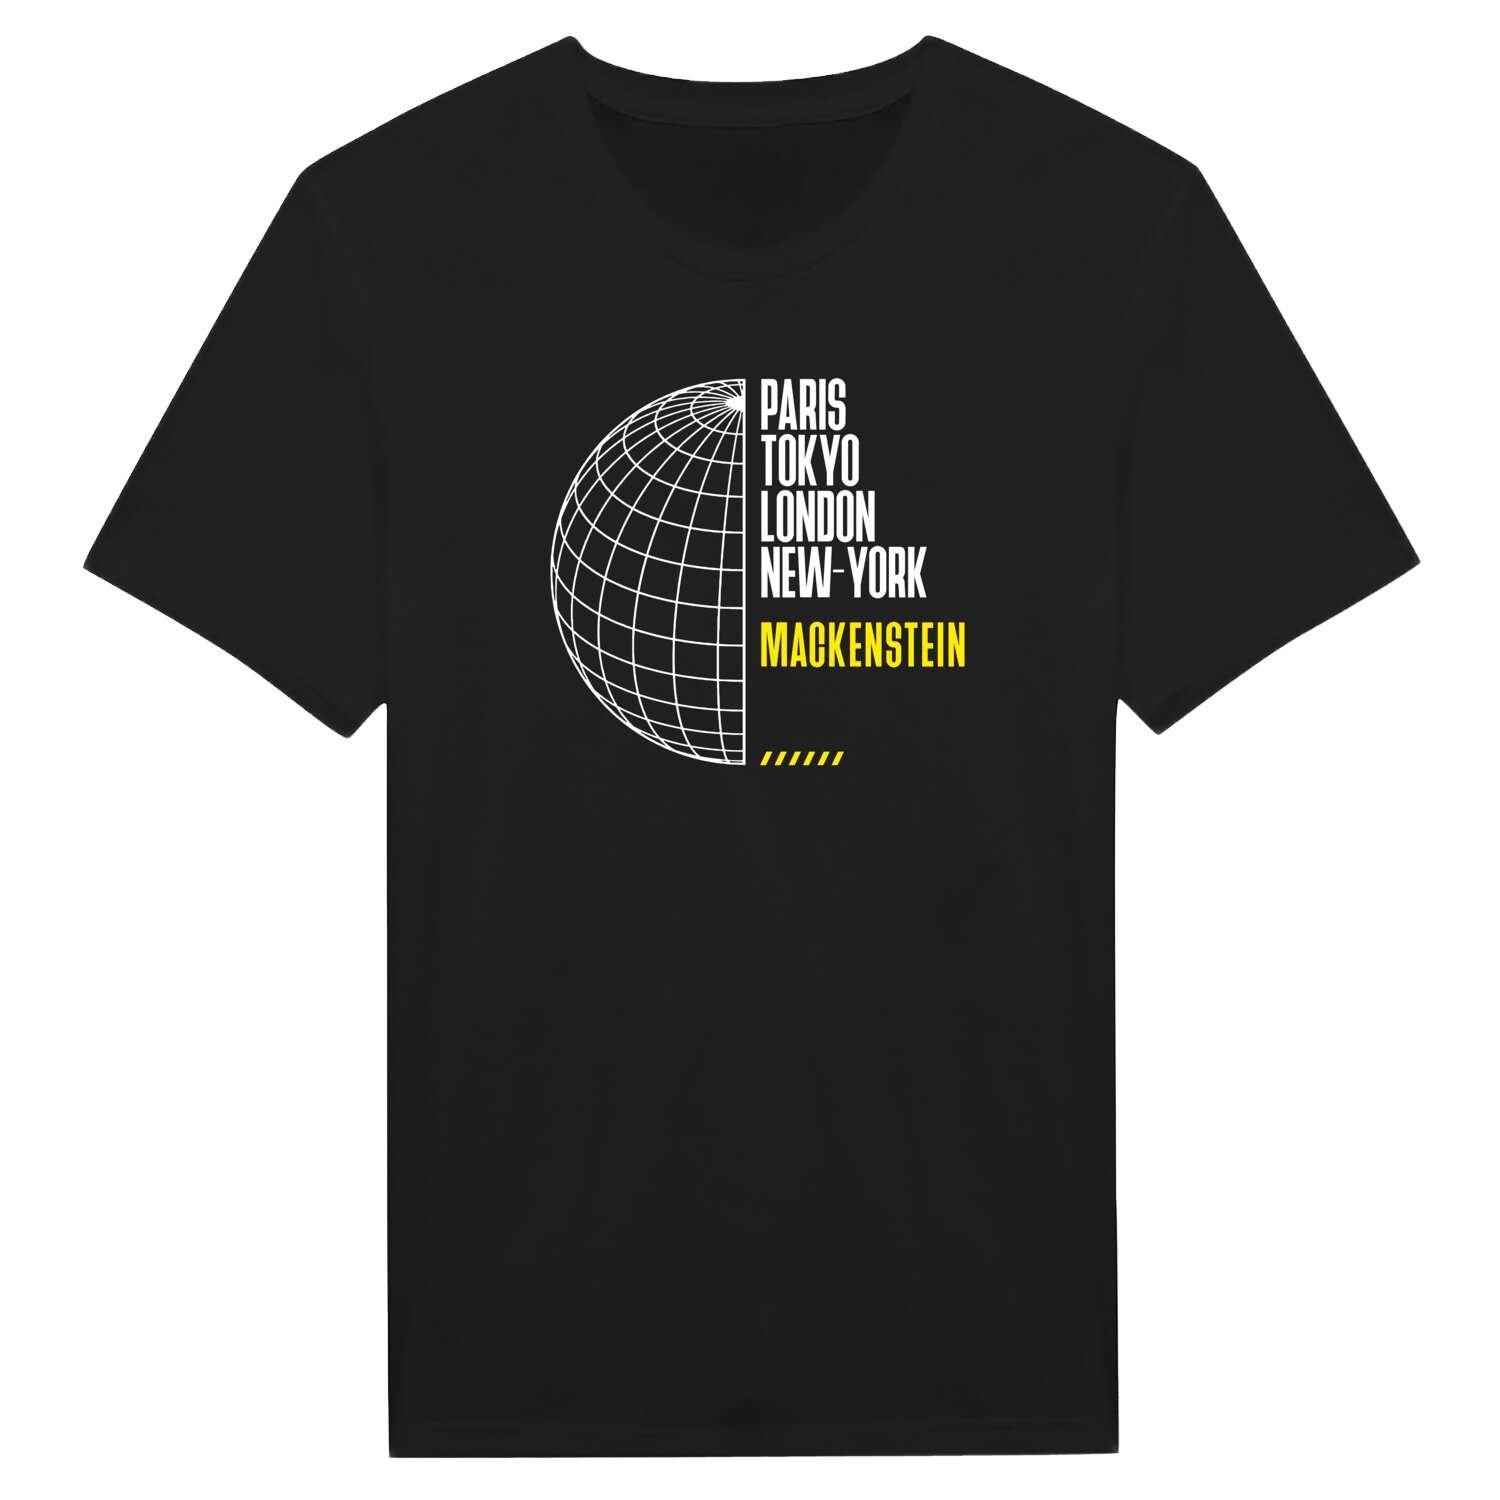 Mackenstein T-Shirt »Paris Tokyo London«